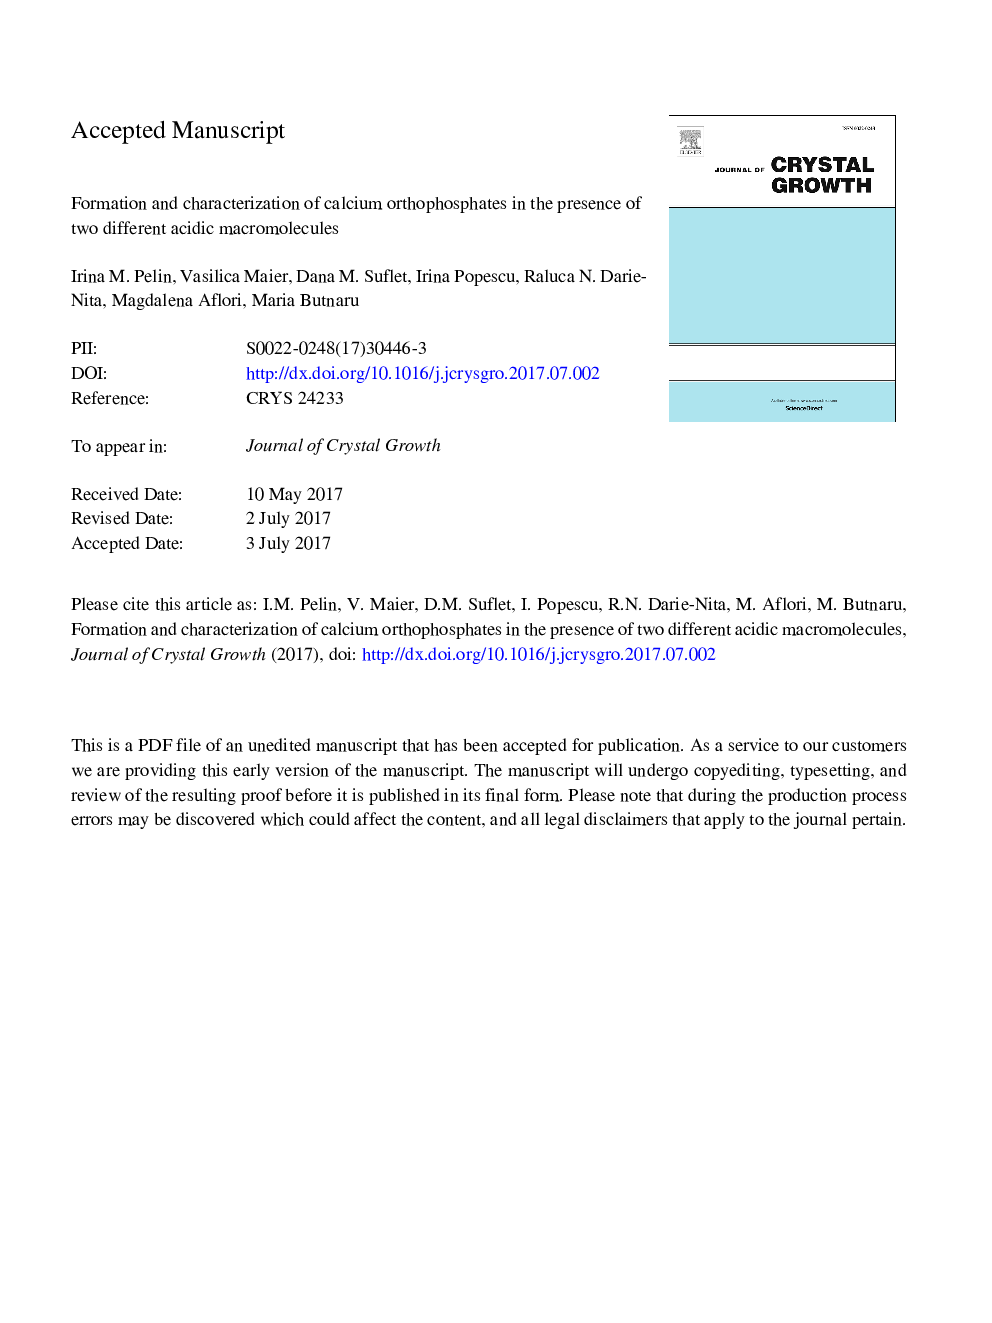 تشکیل و مشخص کردن اوروفسفات کلسیم در حضور دو ماکرومولکول اسیدی 